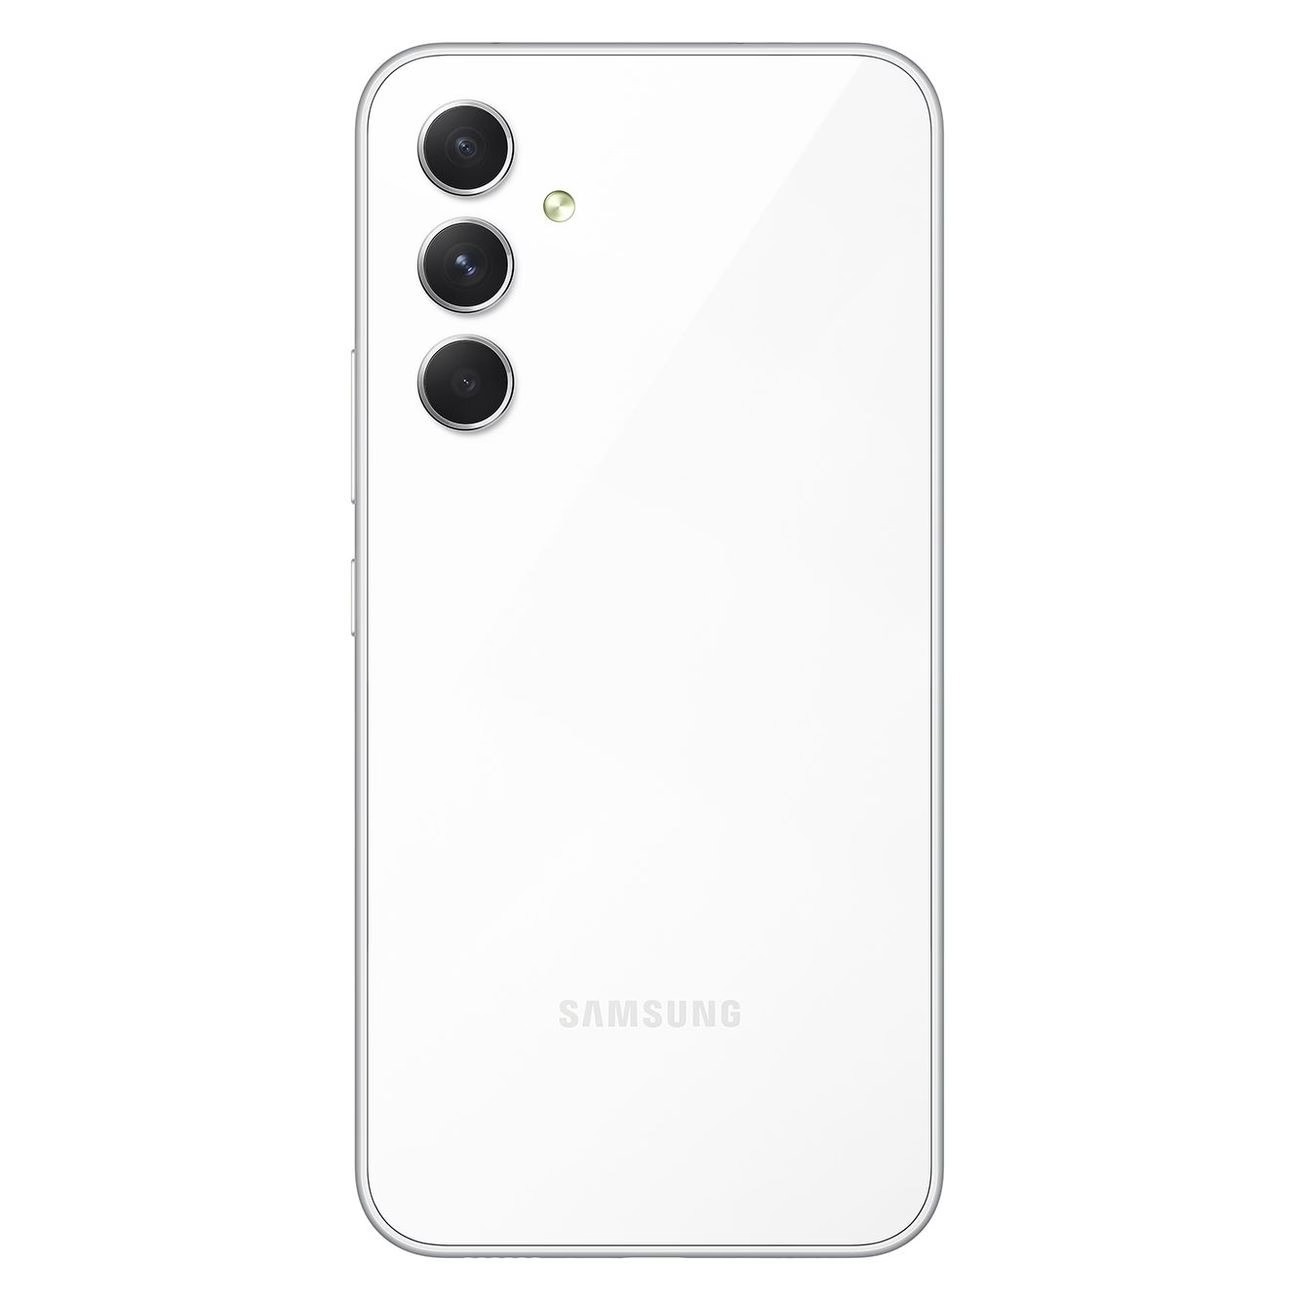 Купить смартфон samsung galaxy a54 6/128gb awesome white A-Серия в официальном магазине Apple, Samsung, Xiaomi. iPixel.ru Купить, заказ, кредит, рассрочка, отзывы,  характеристики, цена,  фотографии, в подарок.